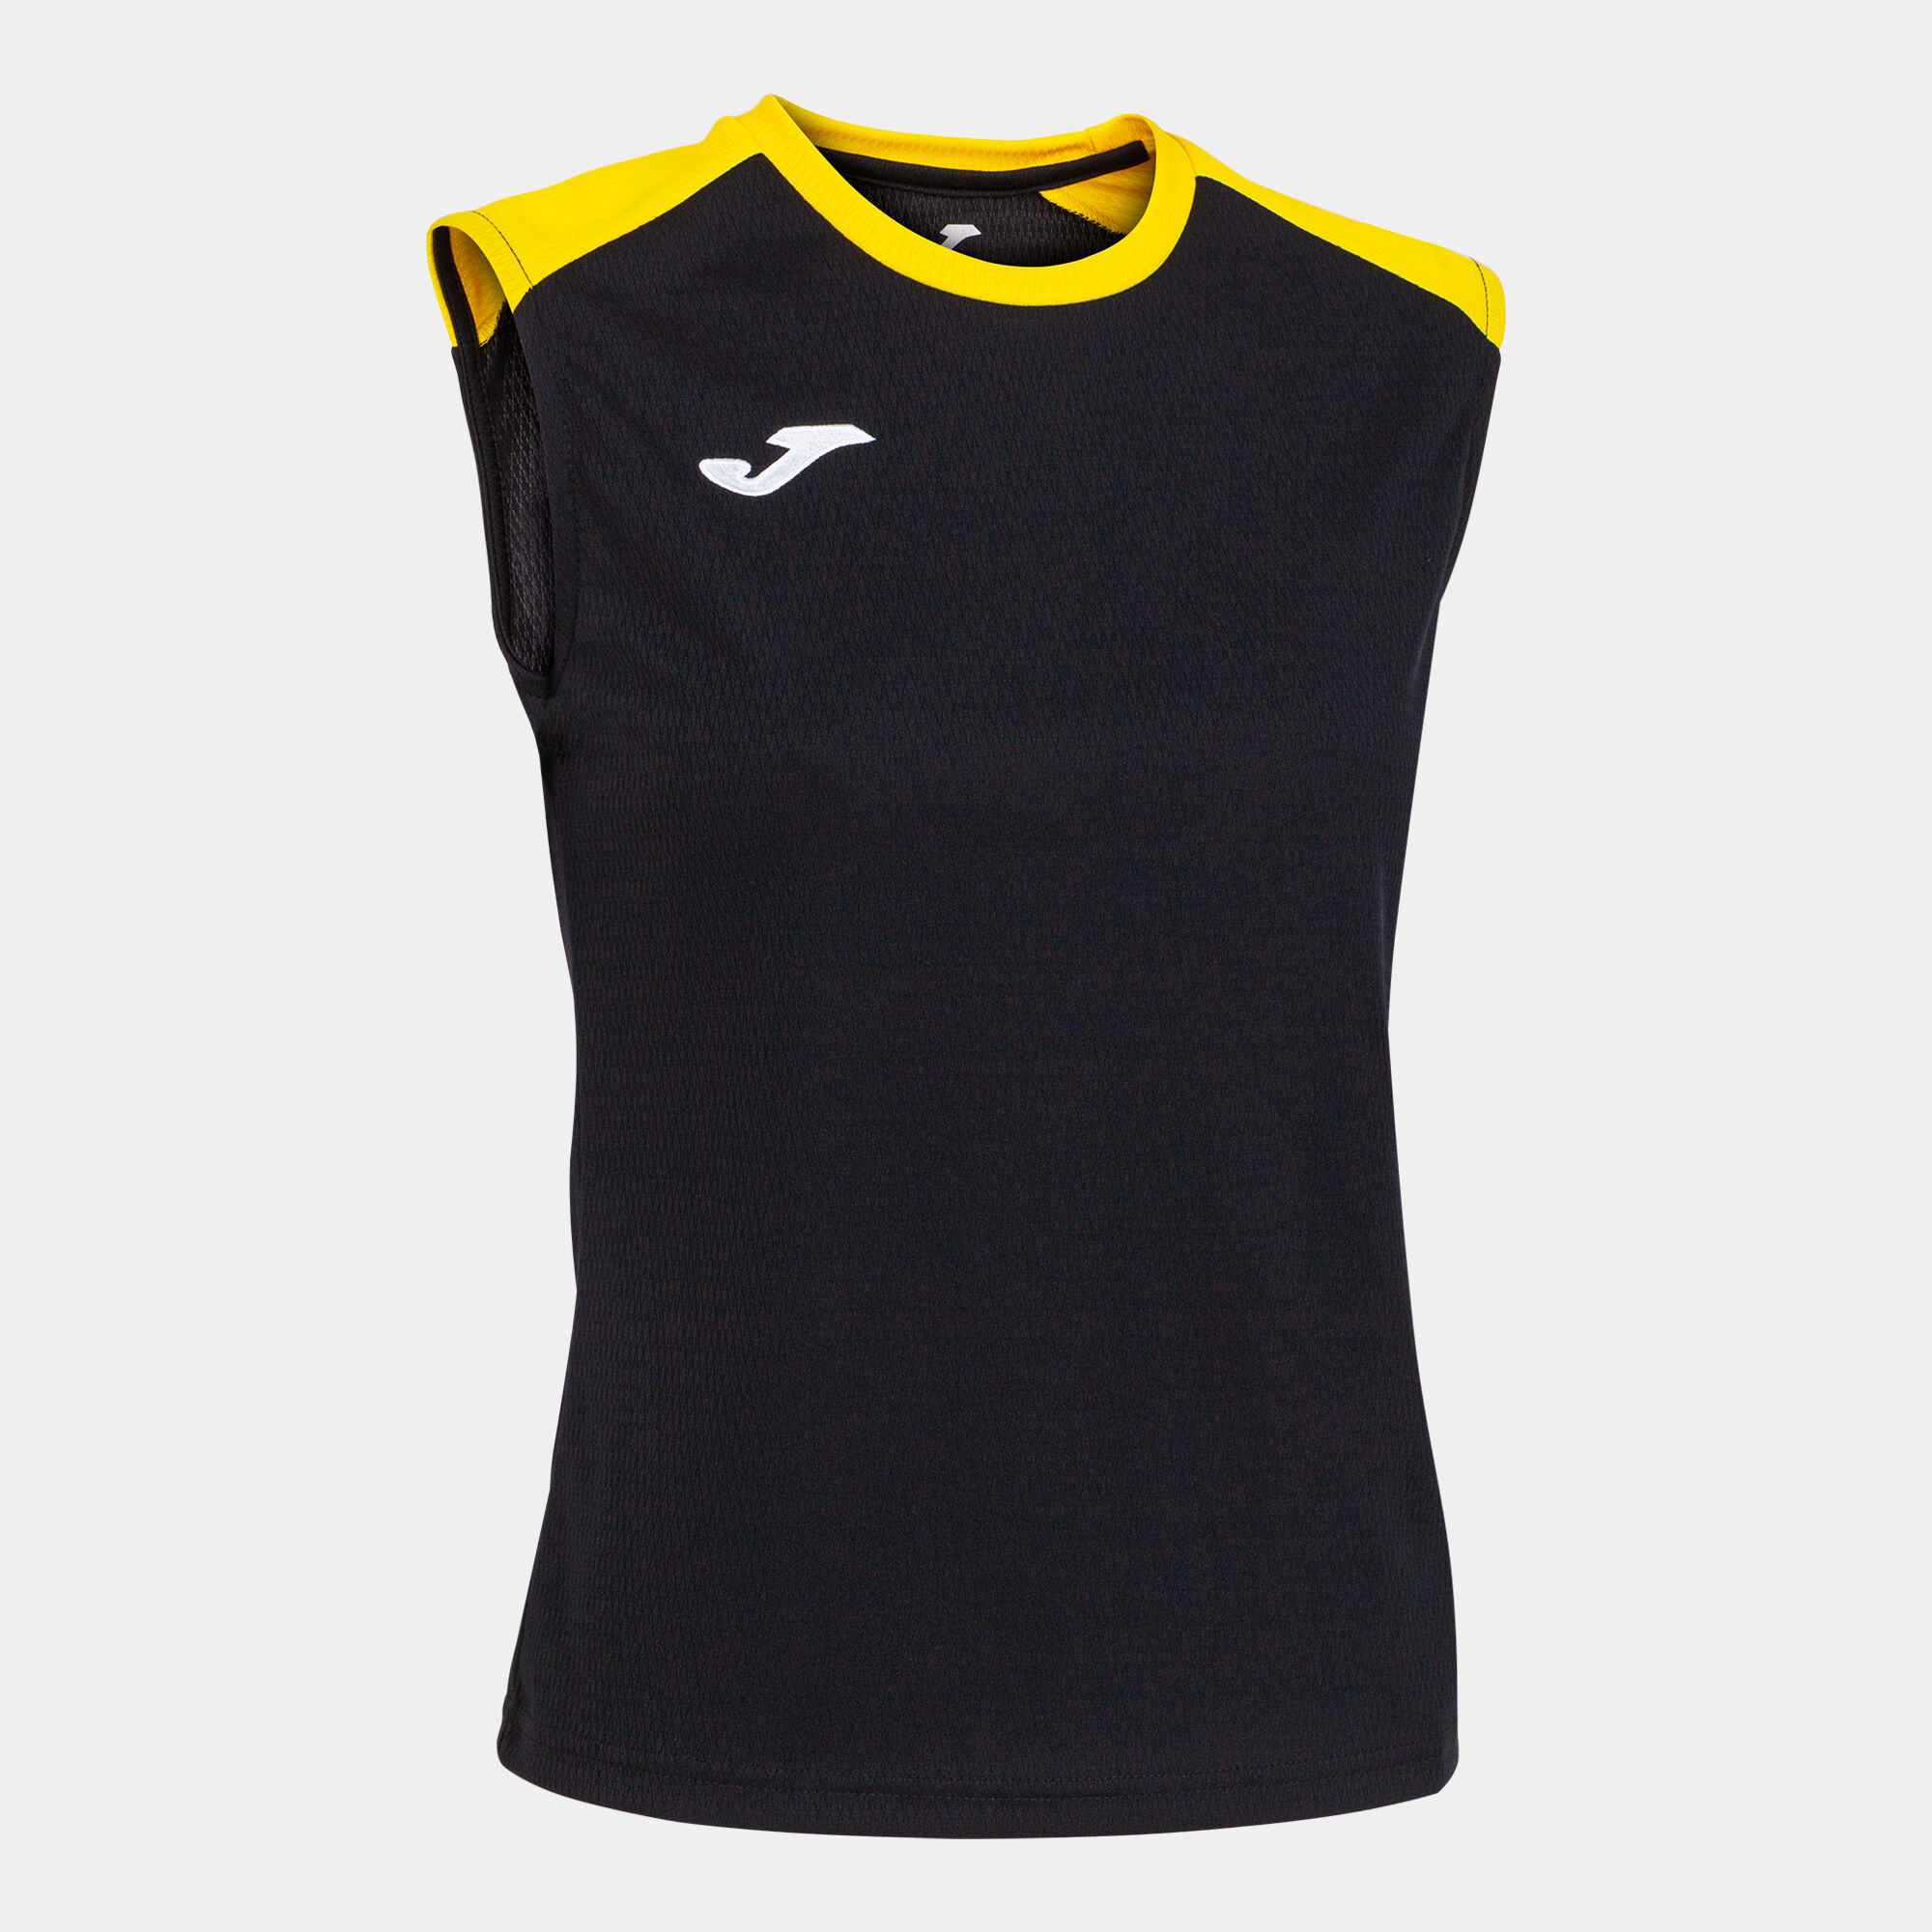 T-shirt de alça mulher Eco Championship preto amarelo